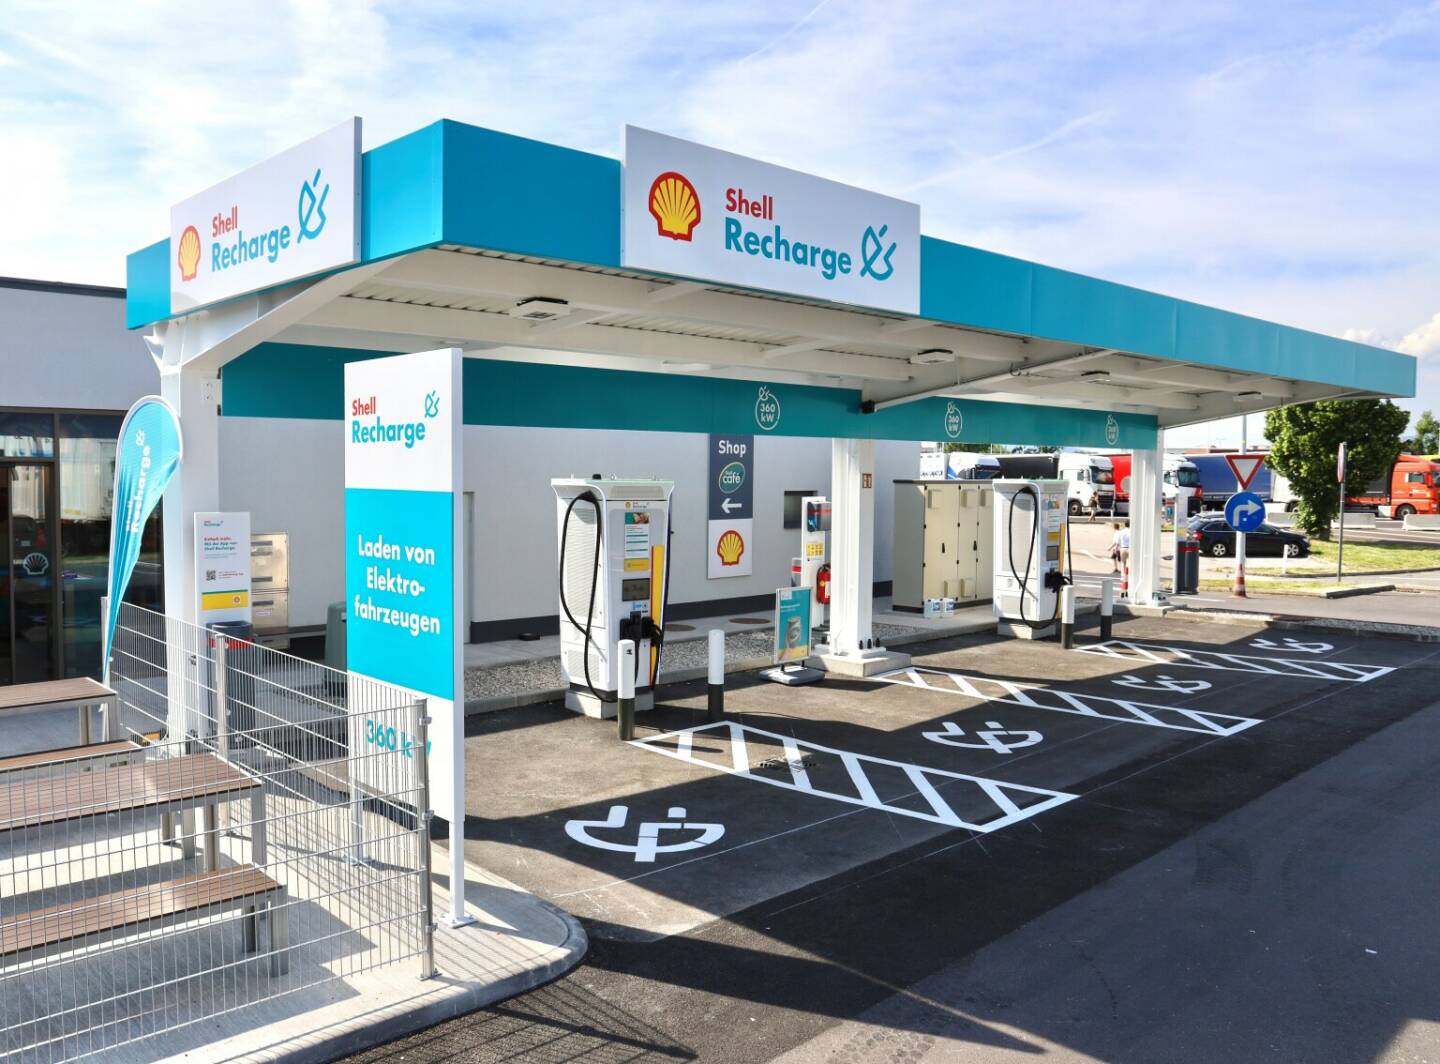 Shell Austria: Shell eröffnet die ersten Ultraschnellladesäulen an Autobahnen in Österreich, Shell plant in Österreich bis 2025 ein flächendeckendes Shell Recharge Ultraschnell- und Schnellladenetz an den Autobahnen zu errichten, Fotocredit:Shell Austria GmbH